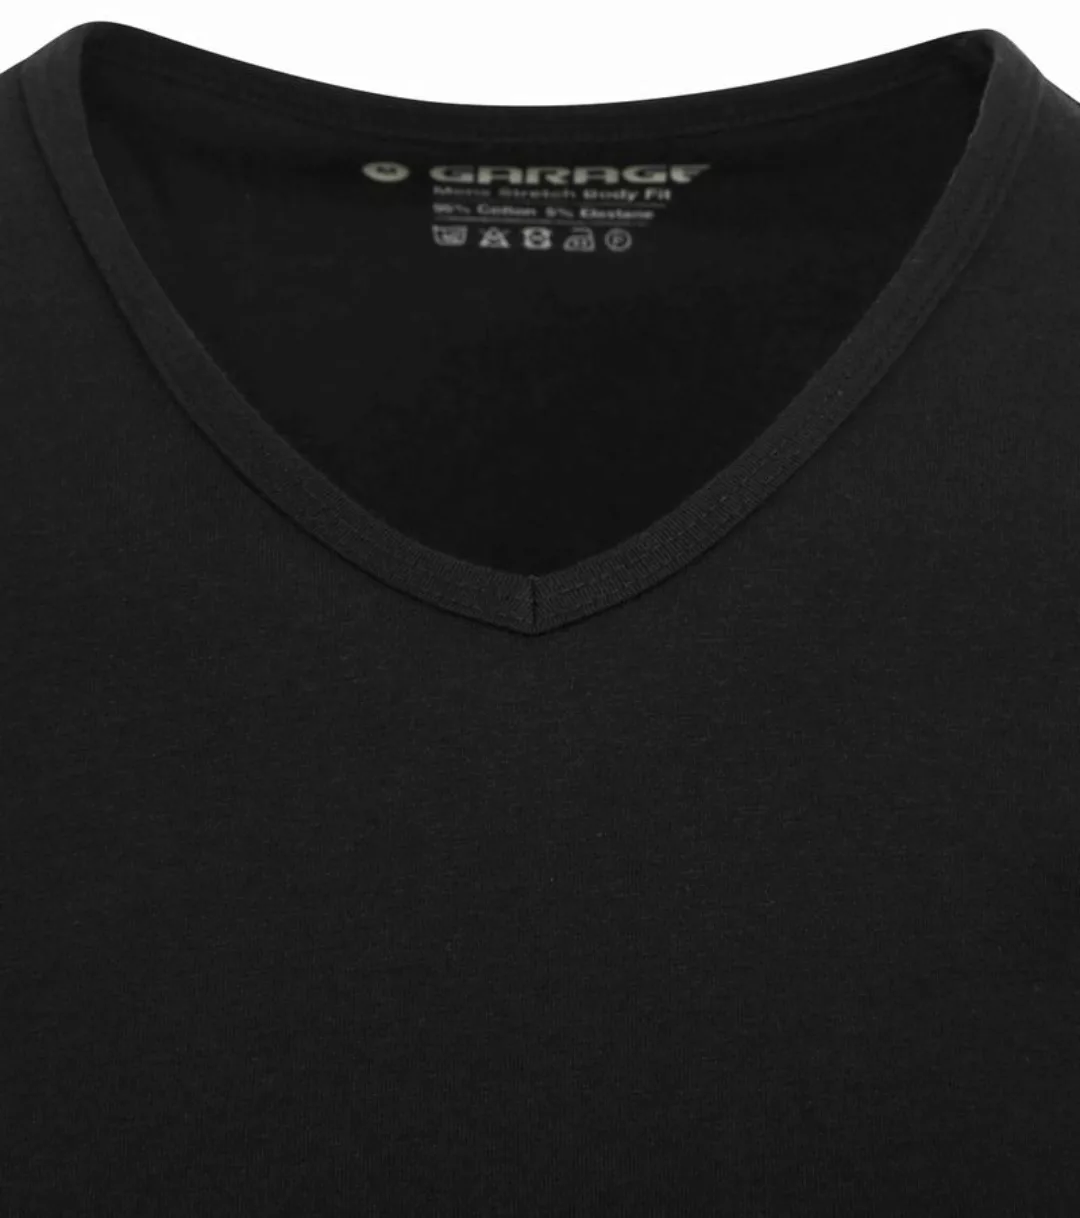 Garage Stretch Basic T-Shirt Schwarz V-Ausschnitt - Größe S günstig online kaufen